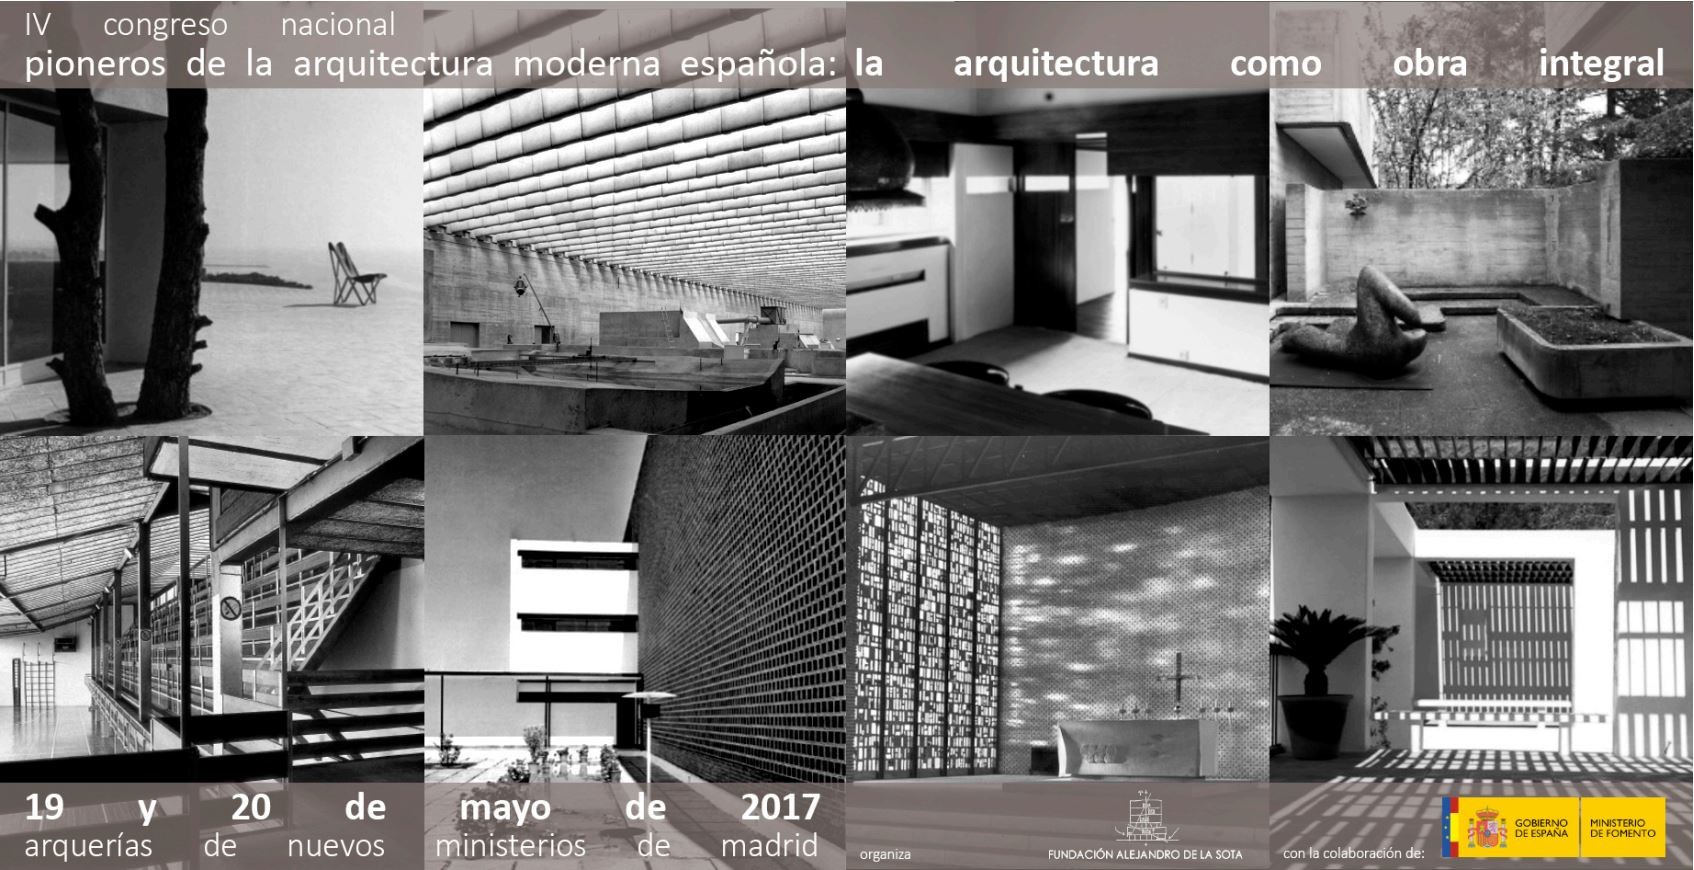 IV Congreso Pioneros de la arquitectura moderna española